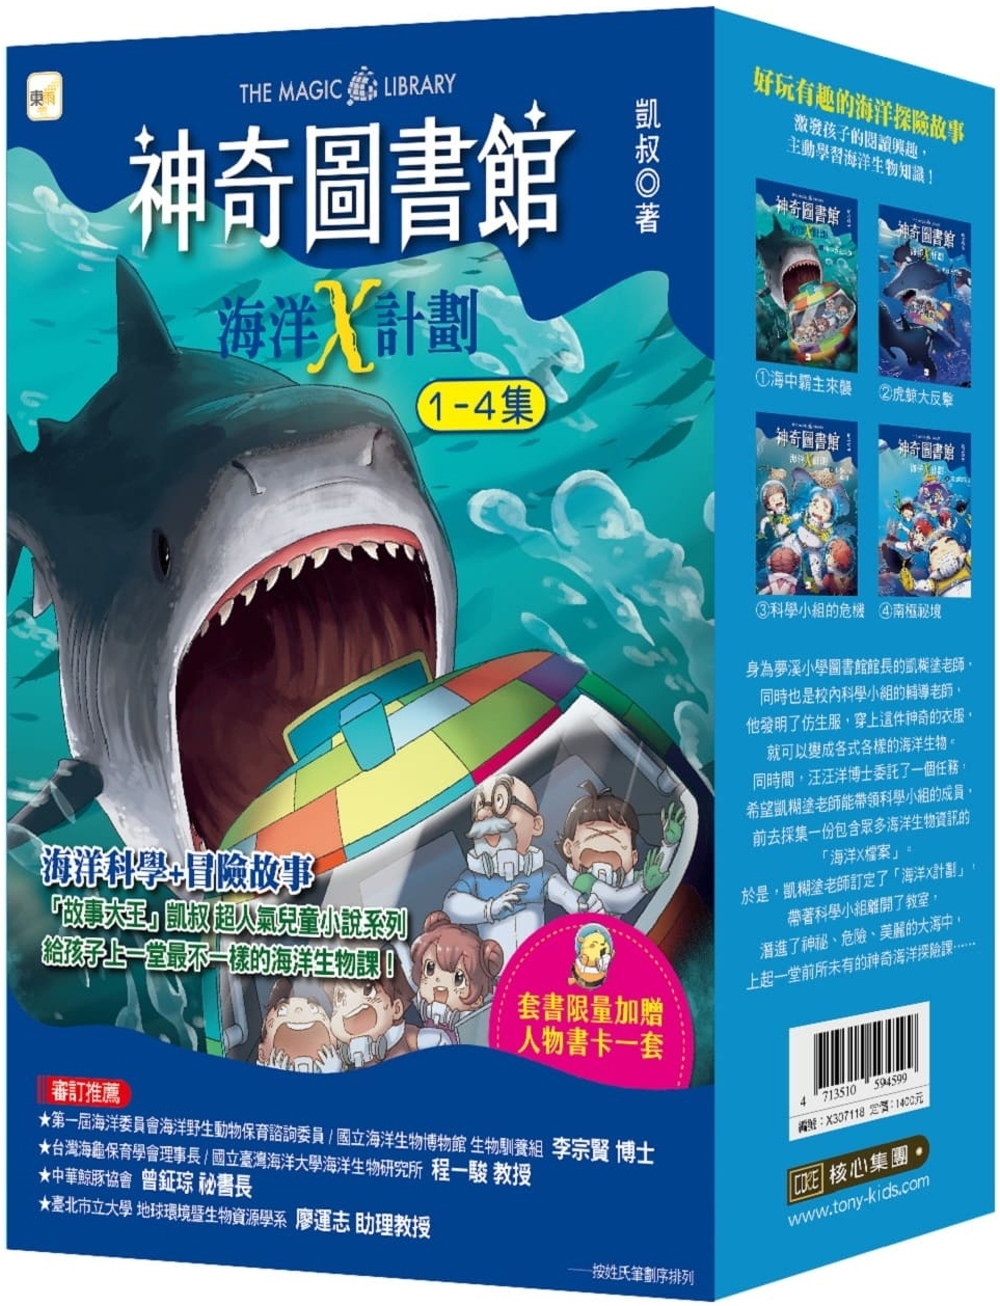 【神奇圖書館】海洋X計劃 1-4冊套書 (中高年級知識讀本)(加贈人物書卡一套)